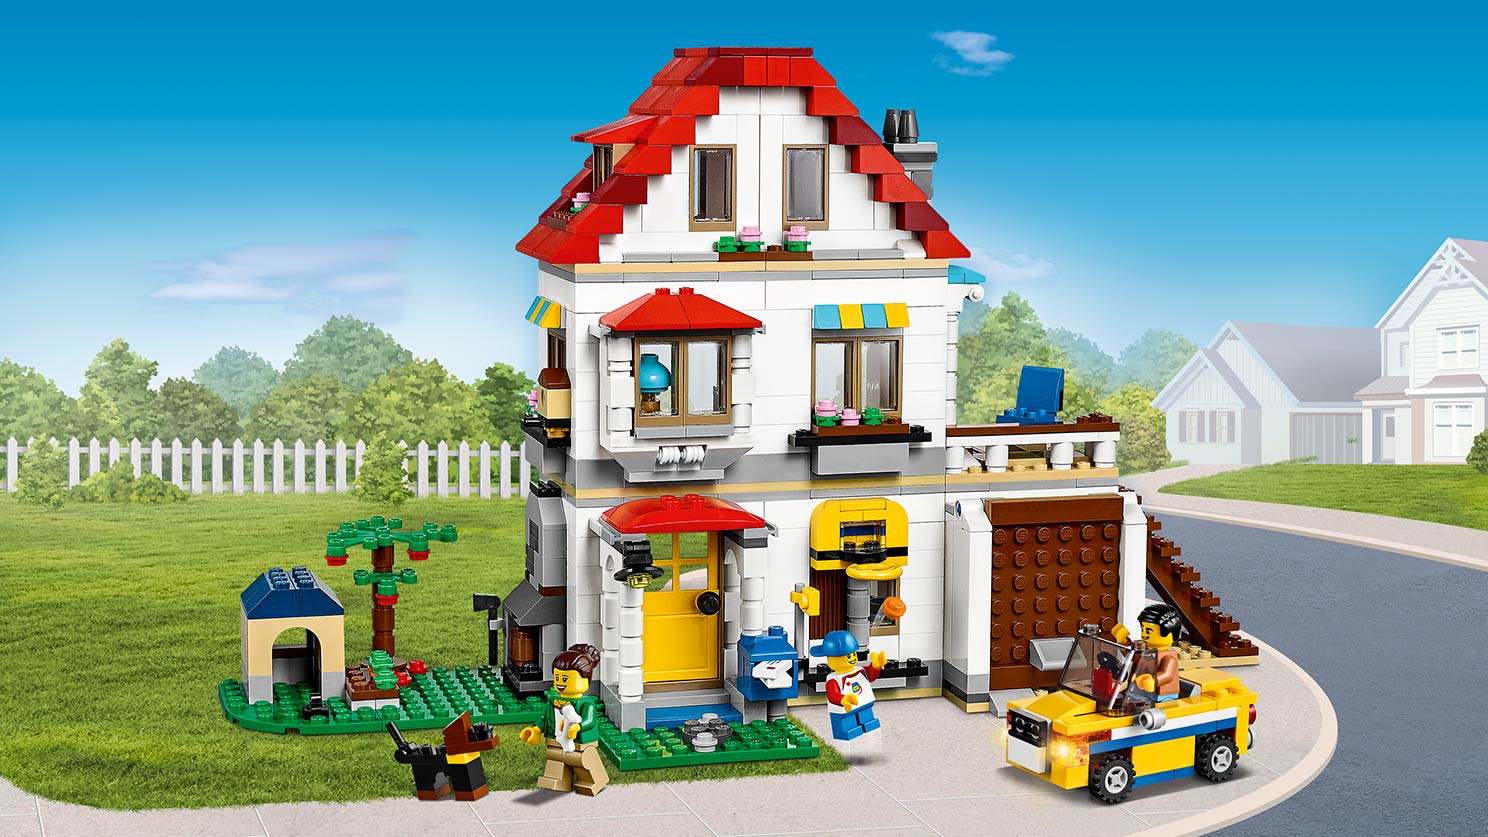 ファミリーコテージ 31069 - レゴ®クリエイターセット - LEGO.comキッズ